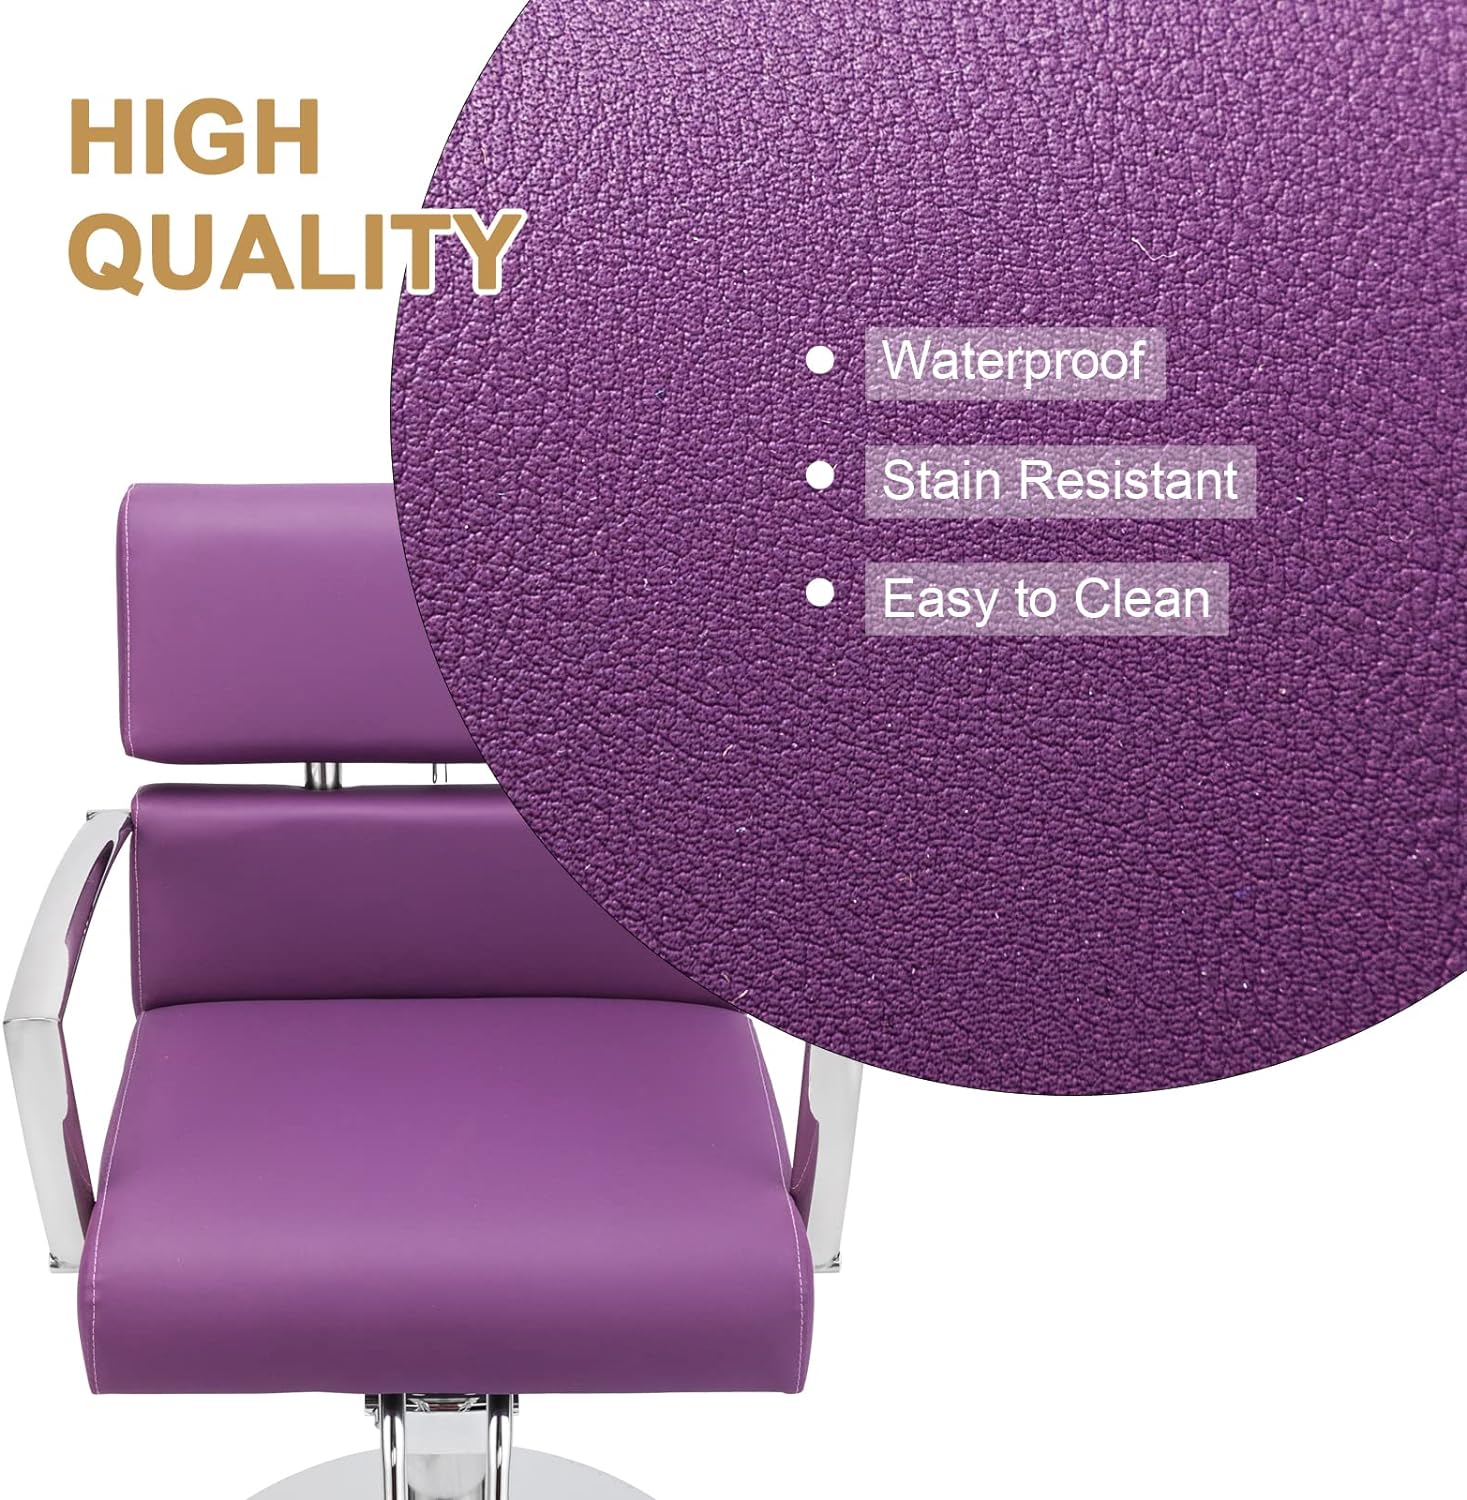 Silla de salón resistente para estilistas silla de barbero giratoria de 360